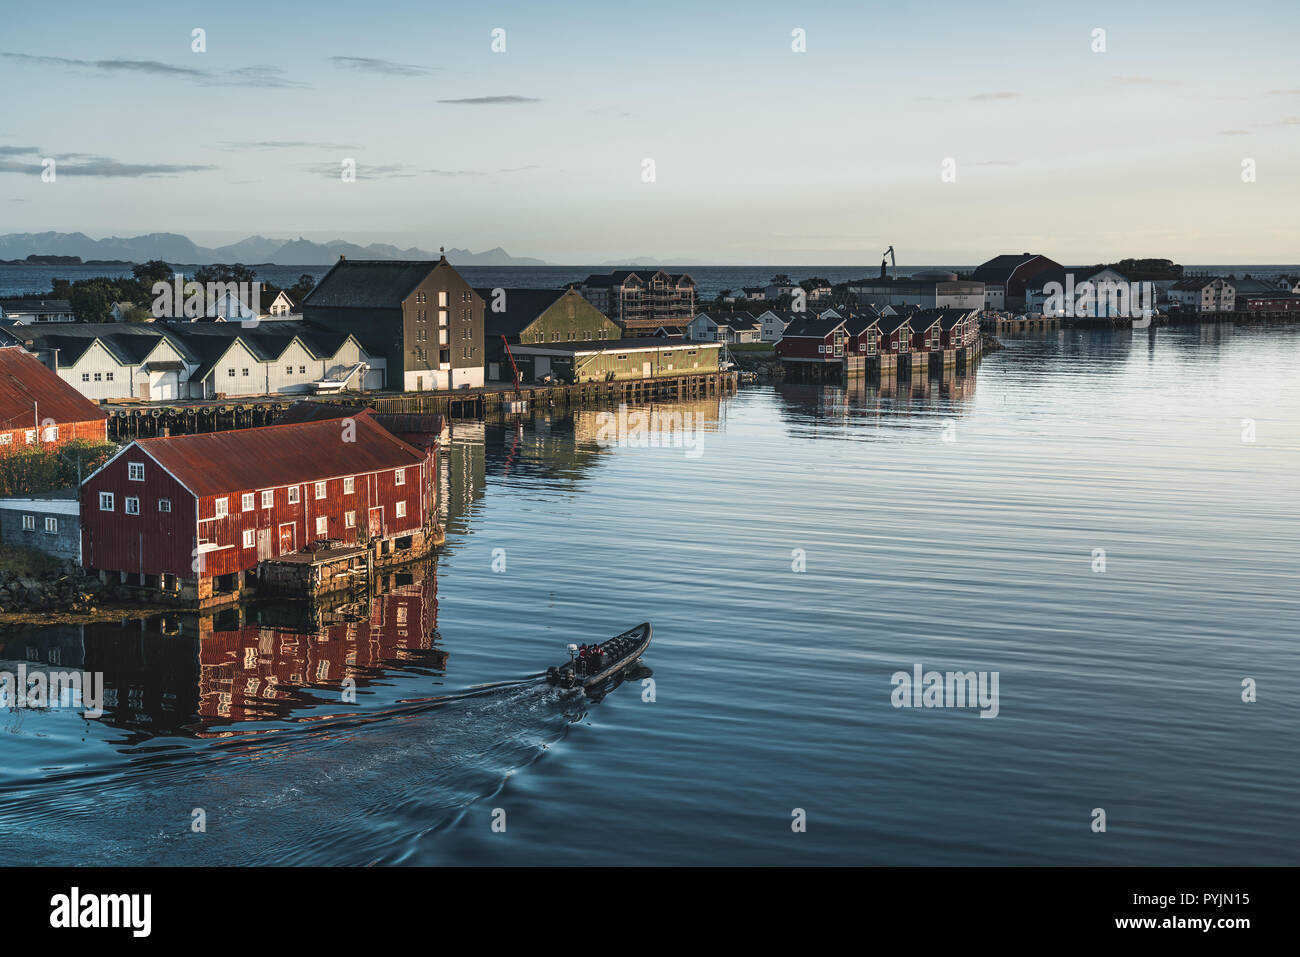 Svolvaer, Norvège - Septembre 2018 : Bateaux du port au bord de l'eau avec des montagnes en arrière-plan. Svolvaer est un village de pêcheurs et touristique ville loc Banque D'Images